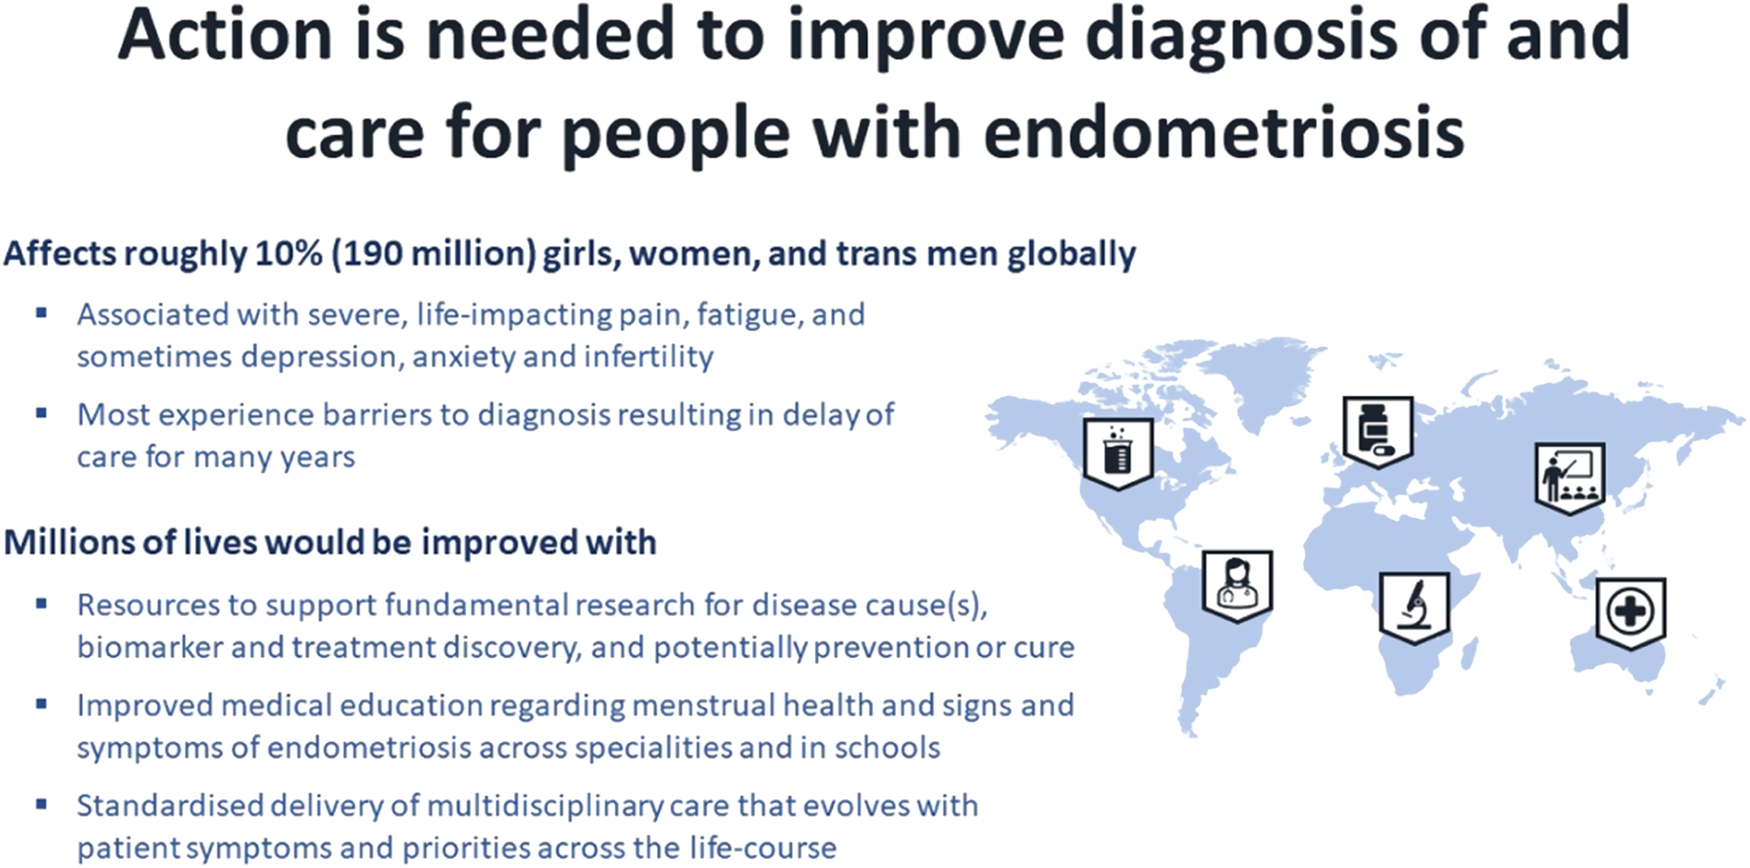 Westpoint Medical Practice - Endometriosis is a common disease